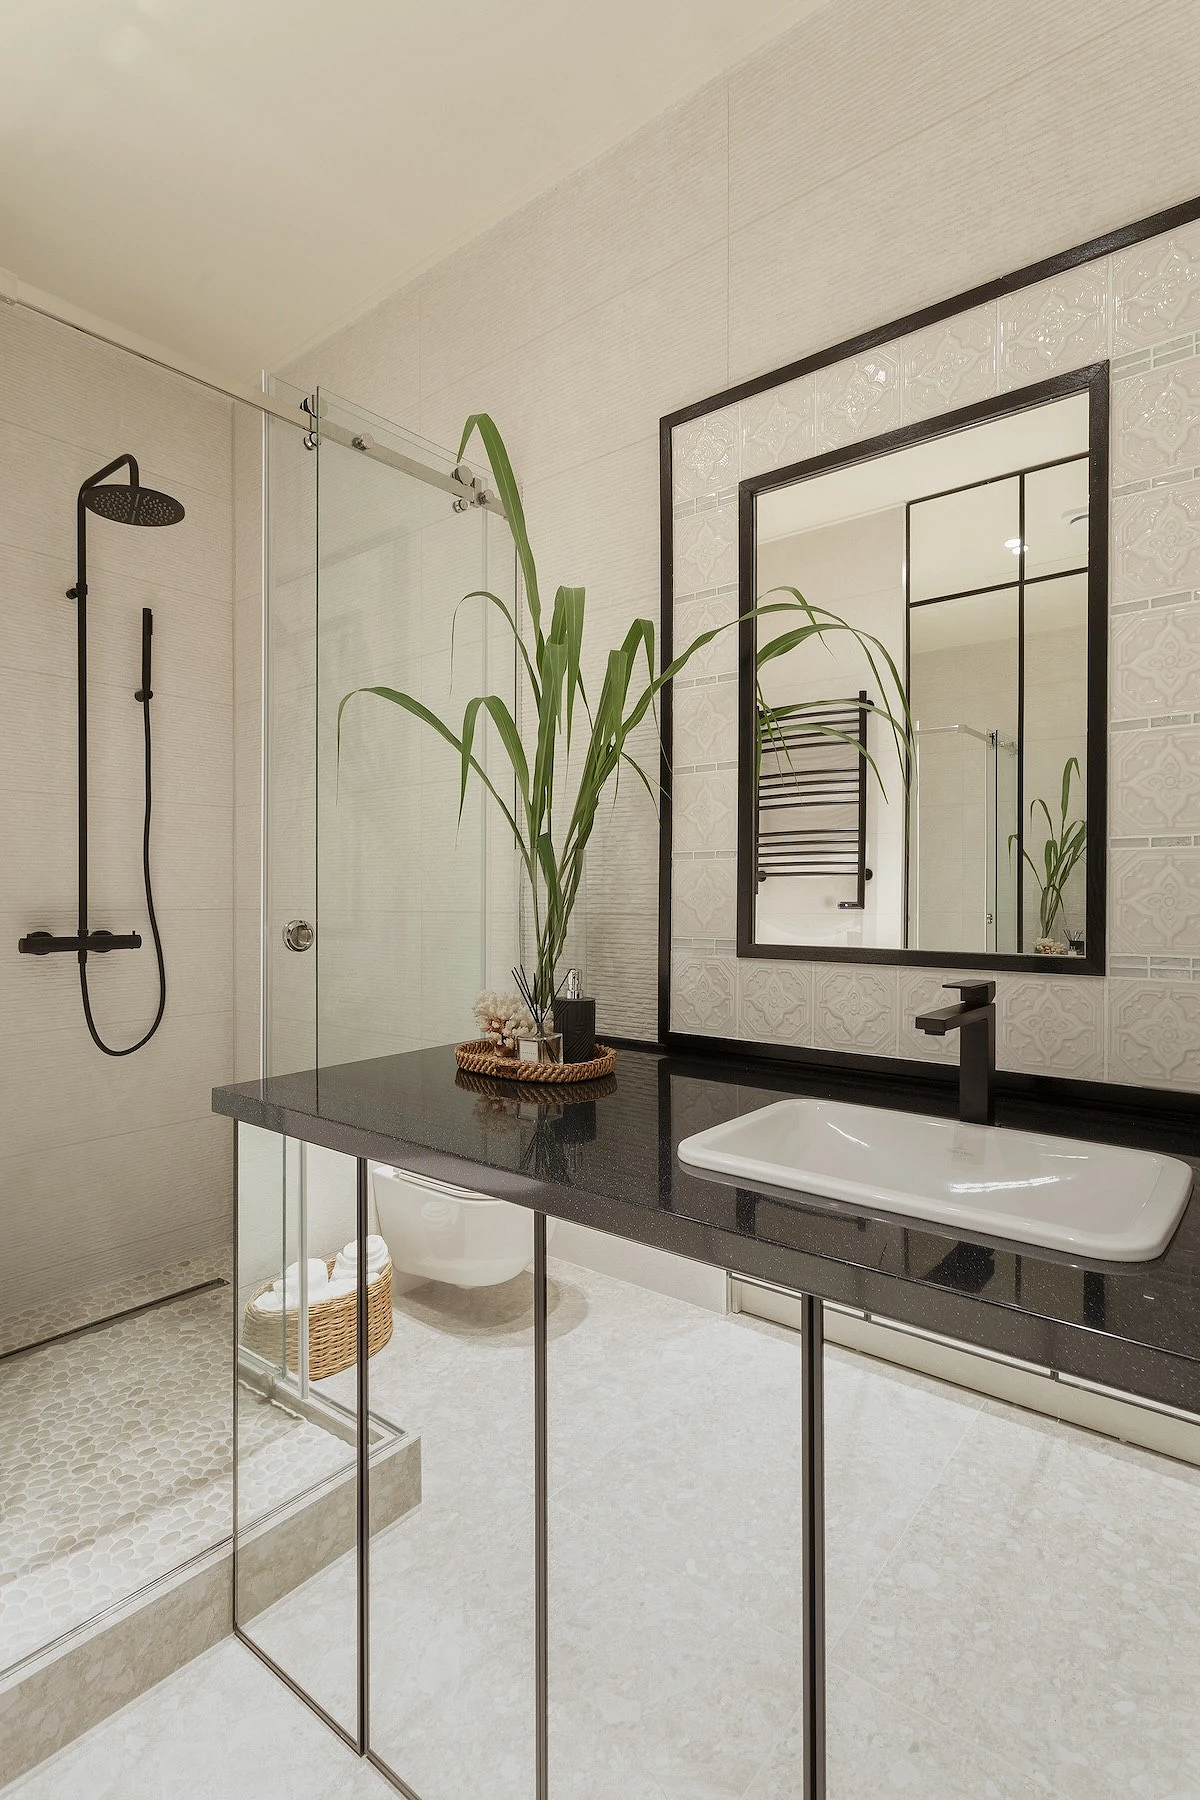 9 необычных решений для ванной комнаты из проектов дизайнеров7